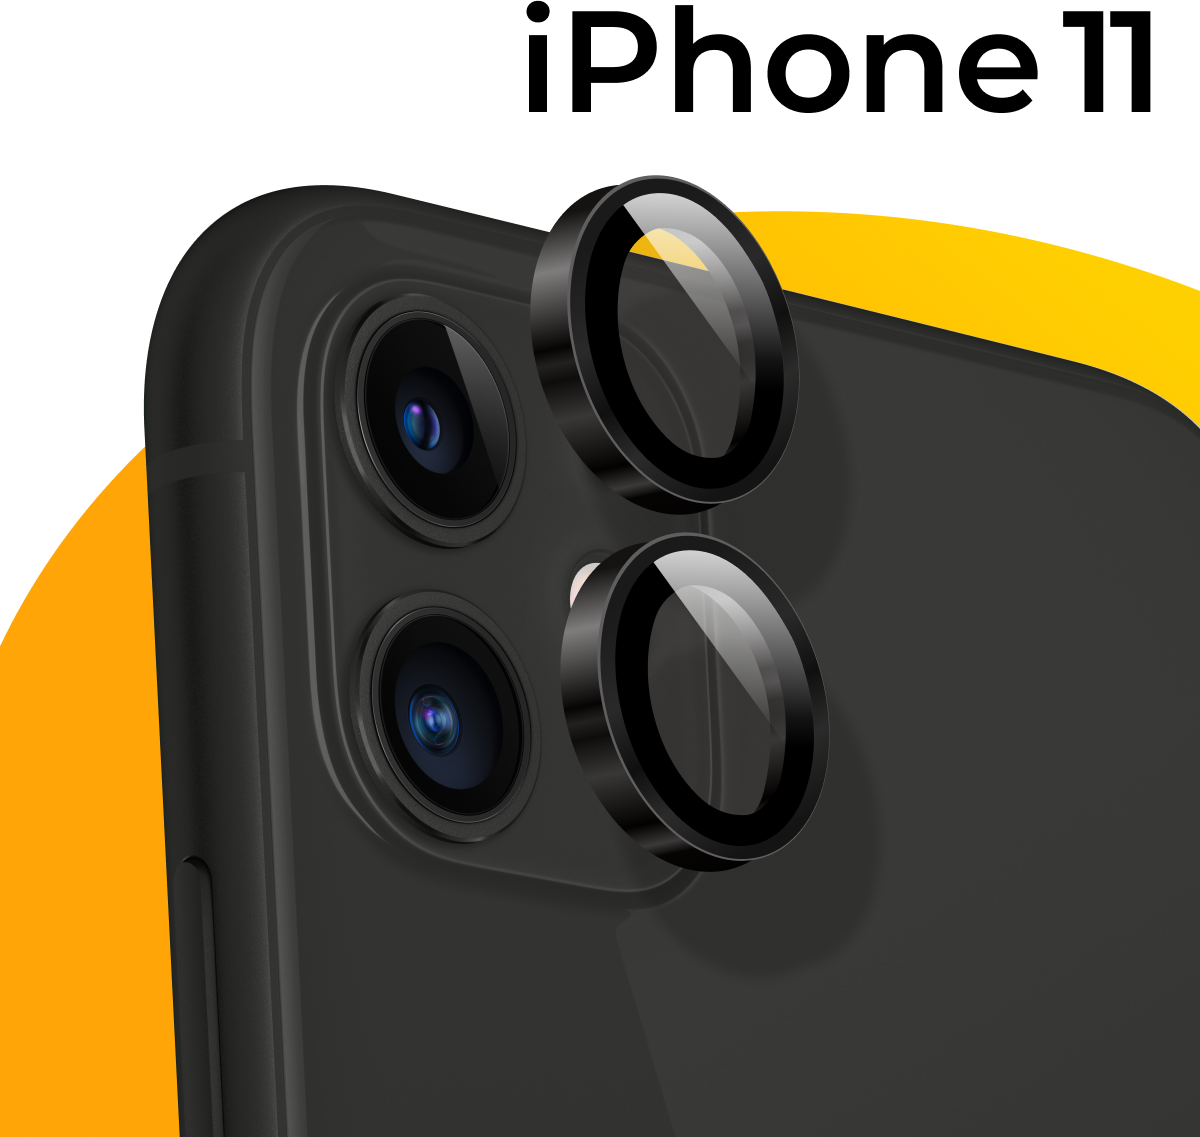 Комплект 2 шт. Защитное стекло для камеры телефона Apple iPhone 11 / Противоударные линзы на камеру смартфона Эпл Айфон 11 / Защита камеры / Серебро